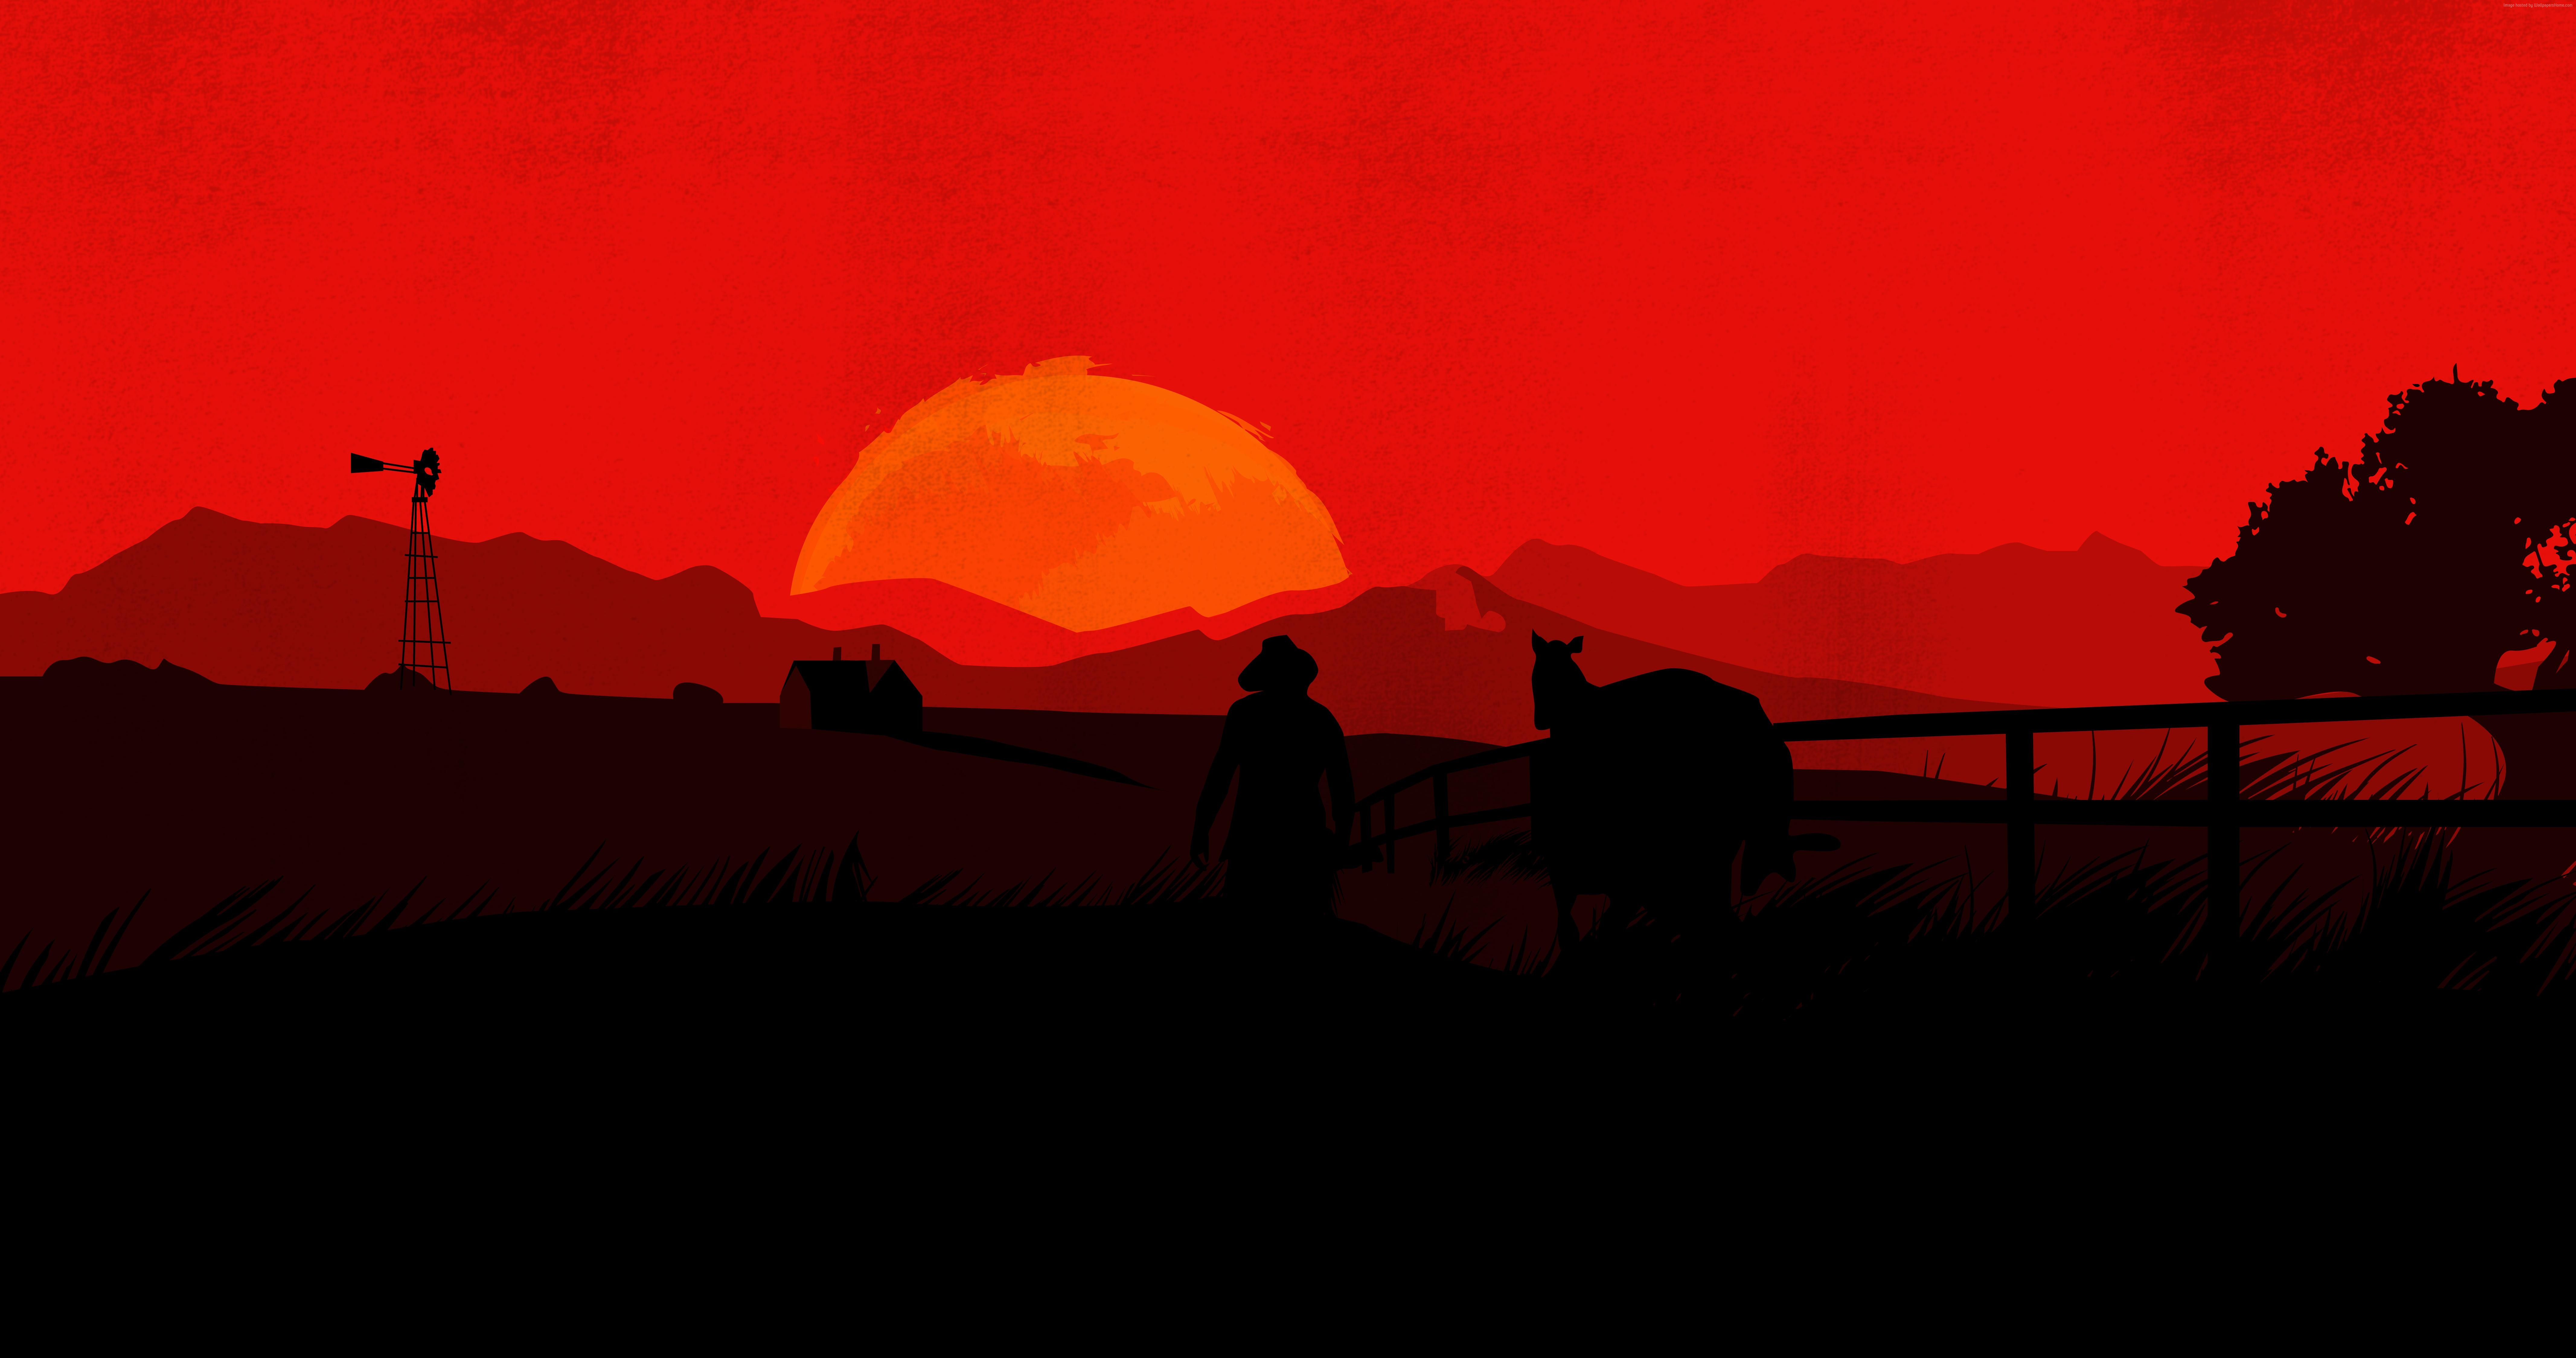 Red Dead Redemption 2 Wallpaper 4K, Arthur Morgan